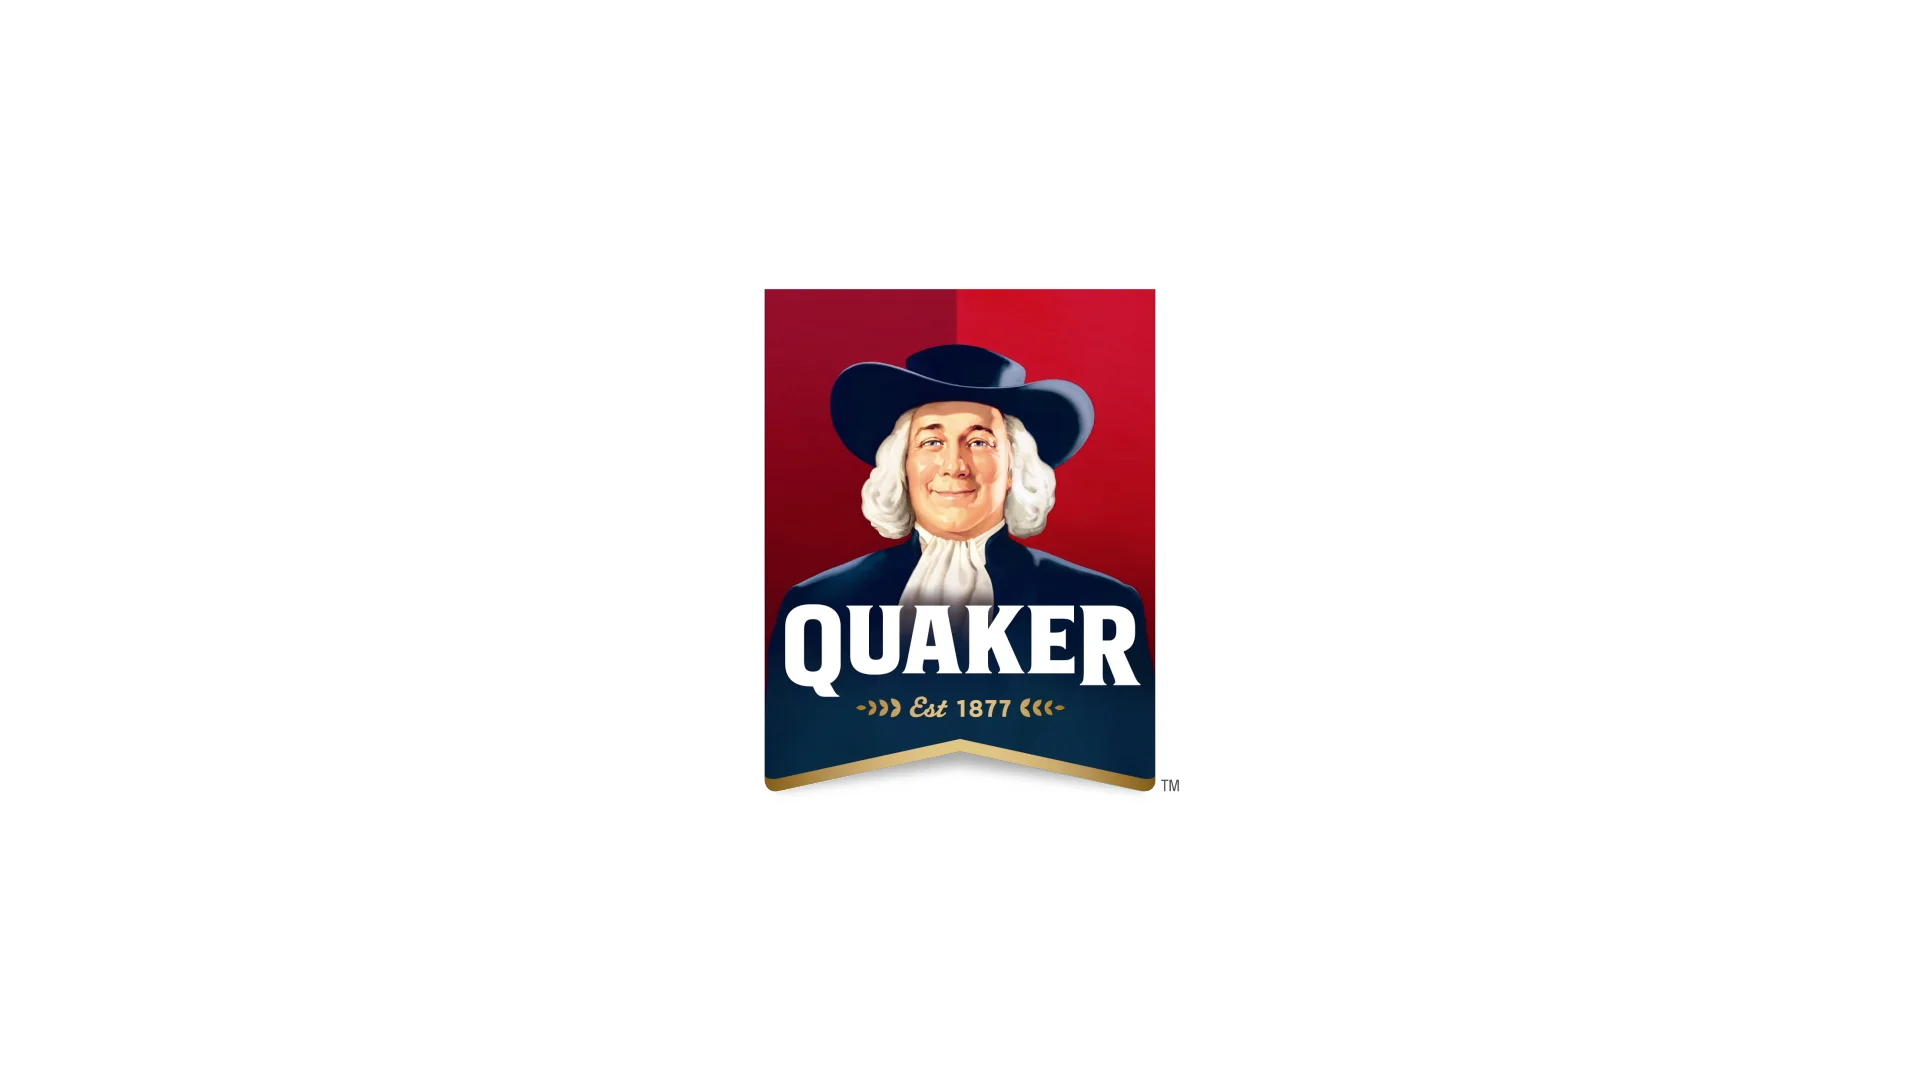 quaker oats logo png